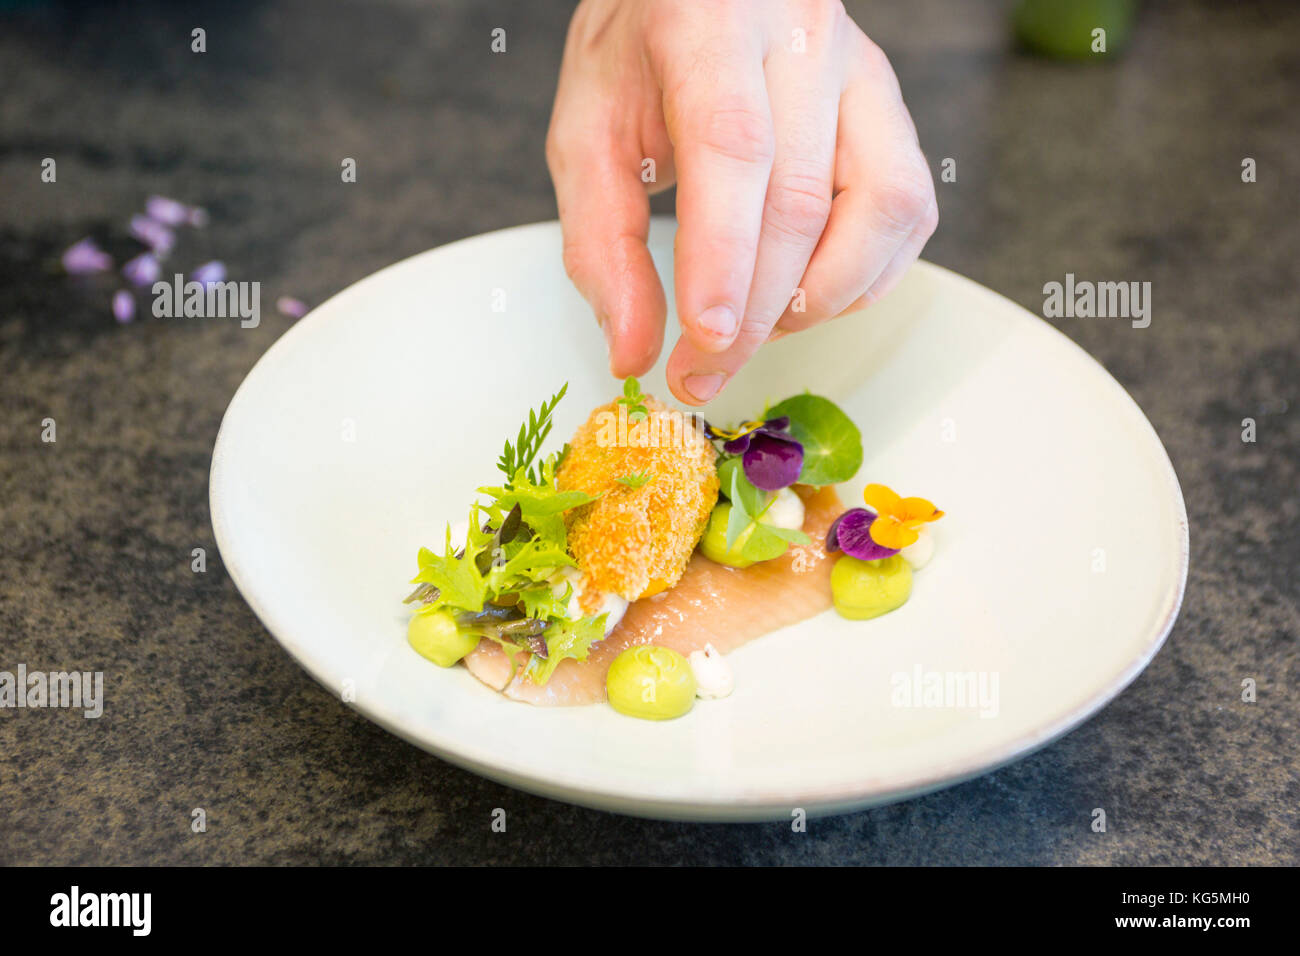 La mise en place di salmone con zucchine fritte, provincia autonoma di Bolzano Alto Adige, trentino alto adige, italia Foto Stock